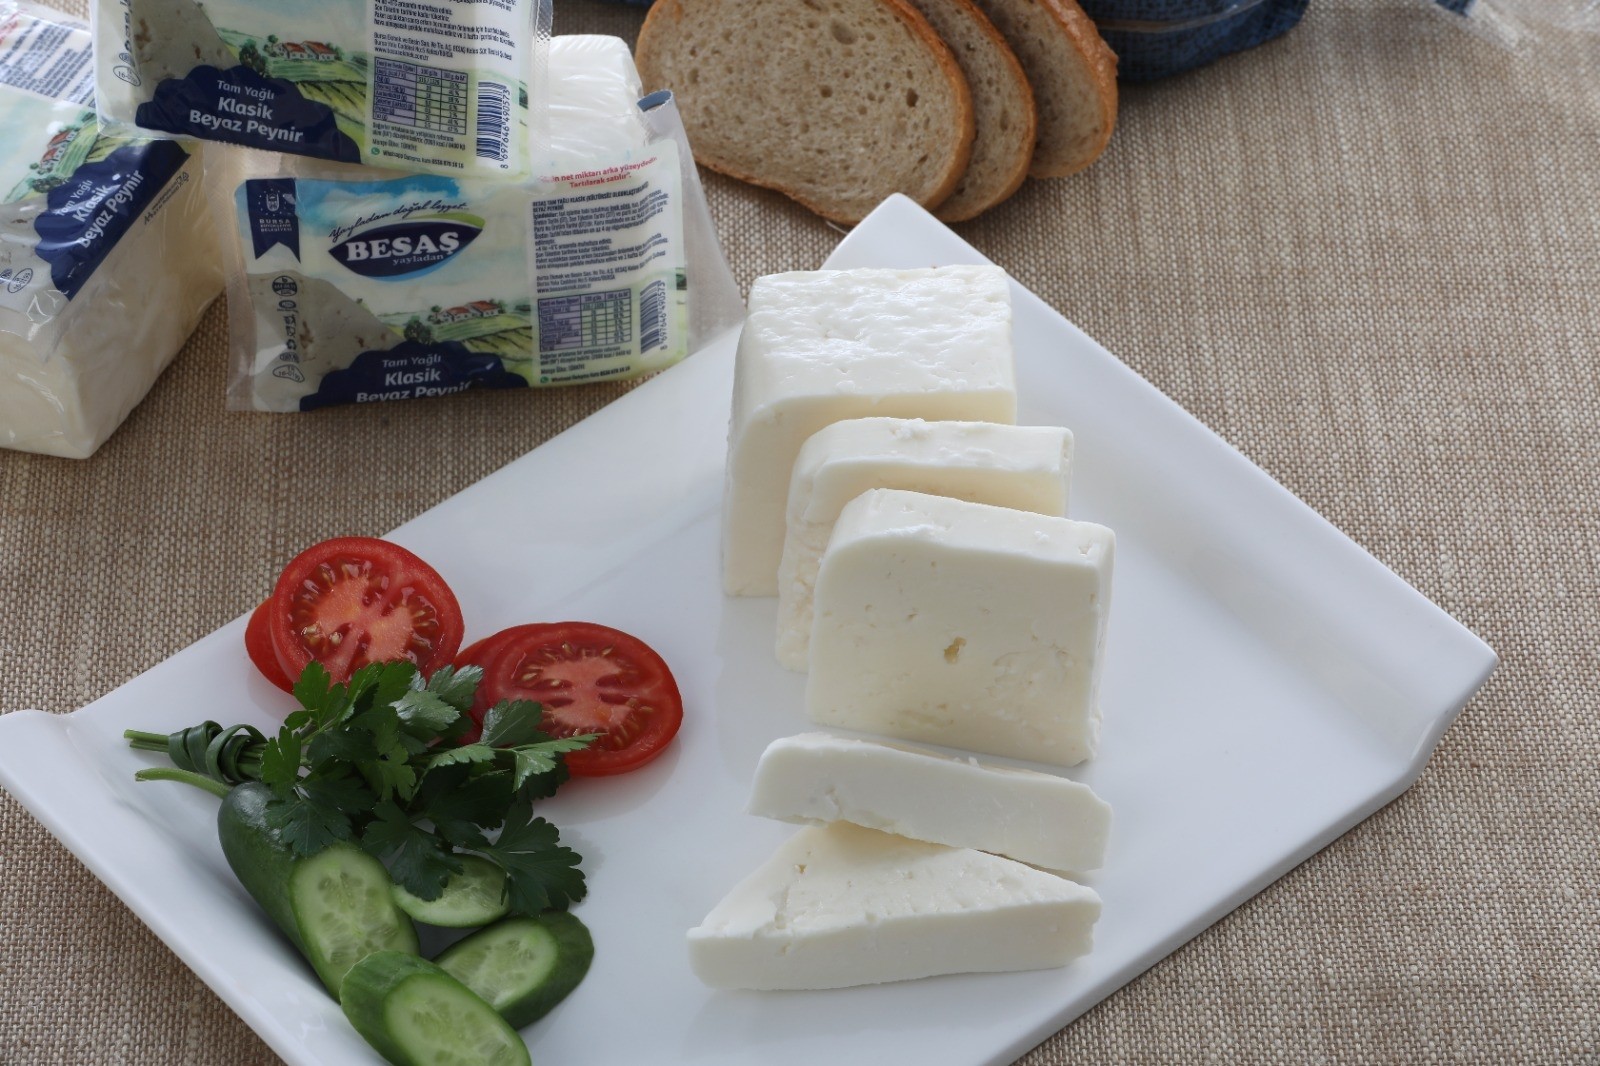 Besaşın Klasik Beyaz Peynirine Tam Not